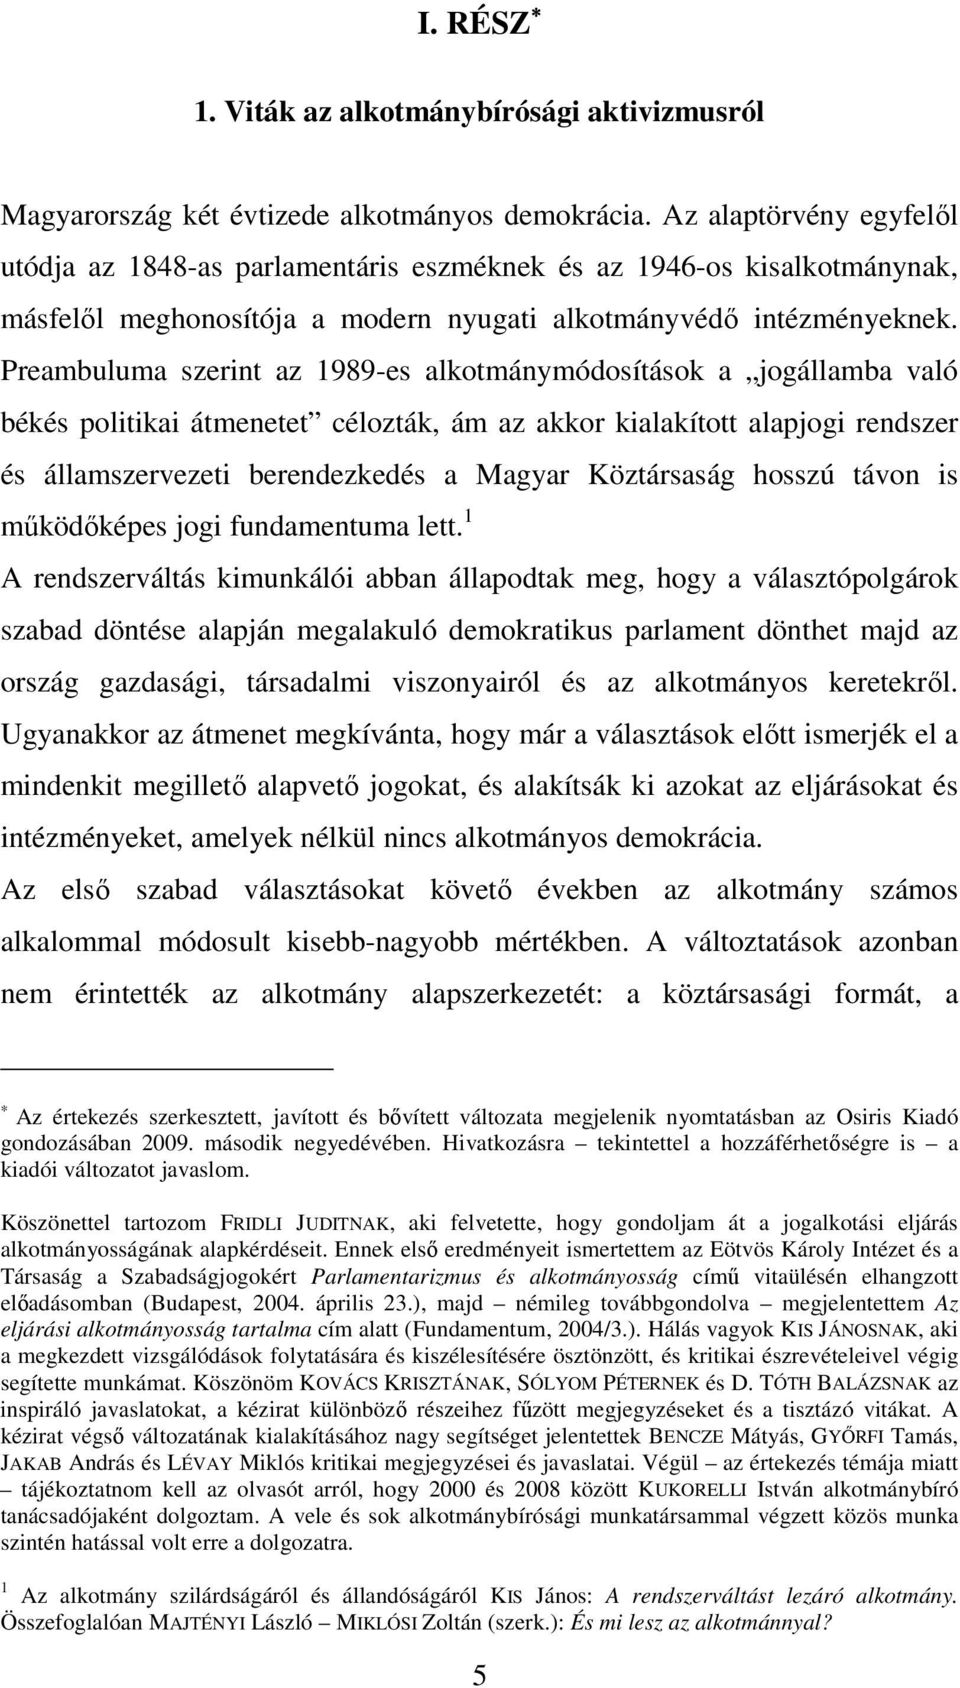 Preambuluma szerint az 1989-es alkotmánymódosítások a jogállamba való békés politikai átmenetet célozták, ám az akkor kialakított alapjogi rendszer és államszervezeti berendezkedés a Magyar